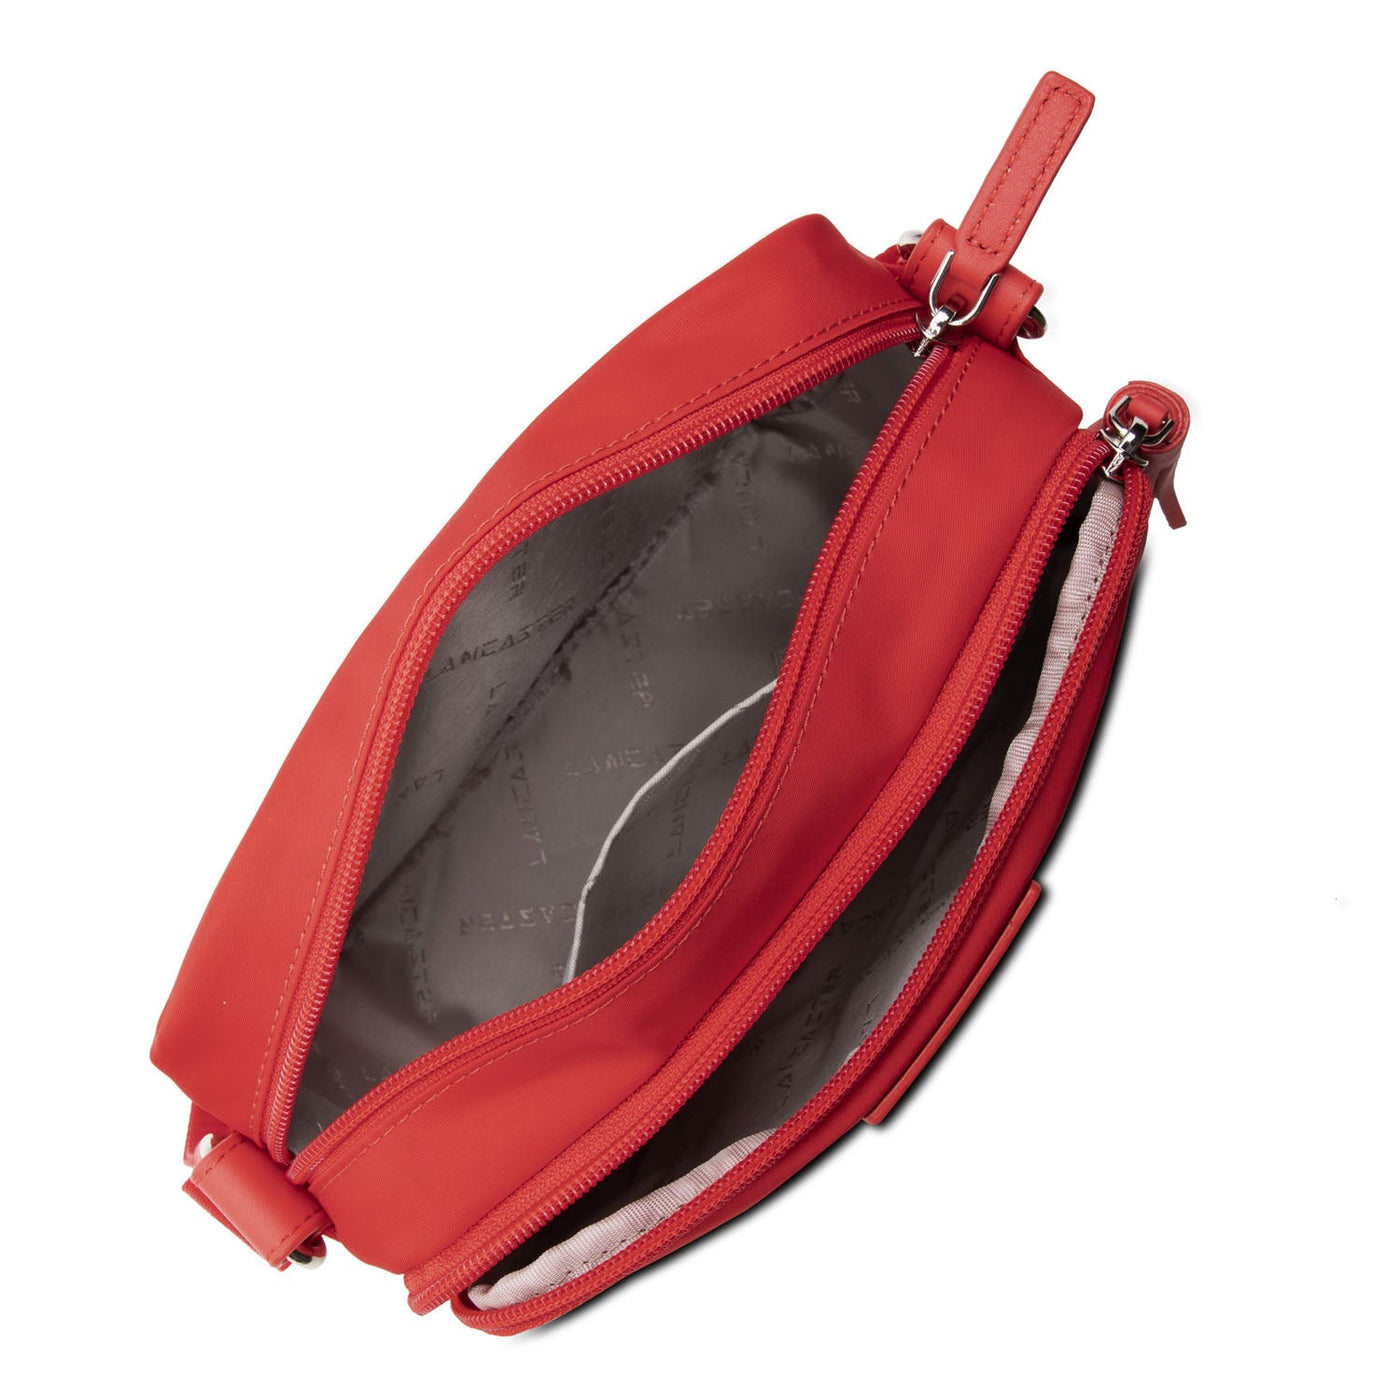 crossbody bag - basic pompon #couleur_corail